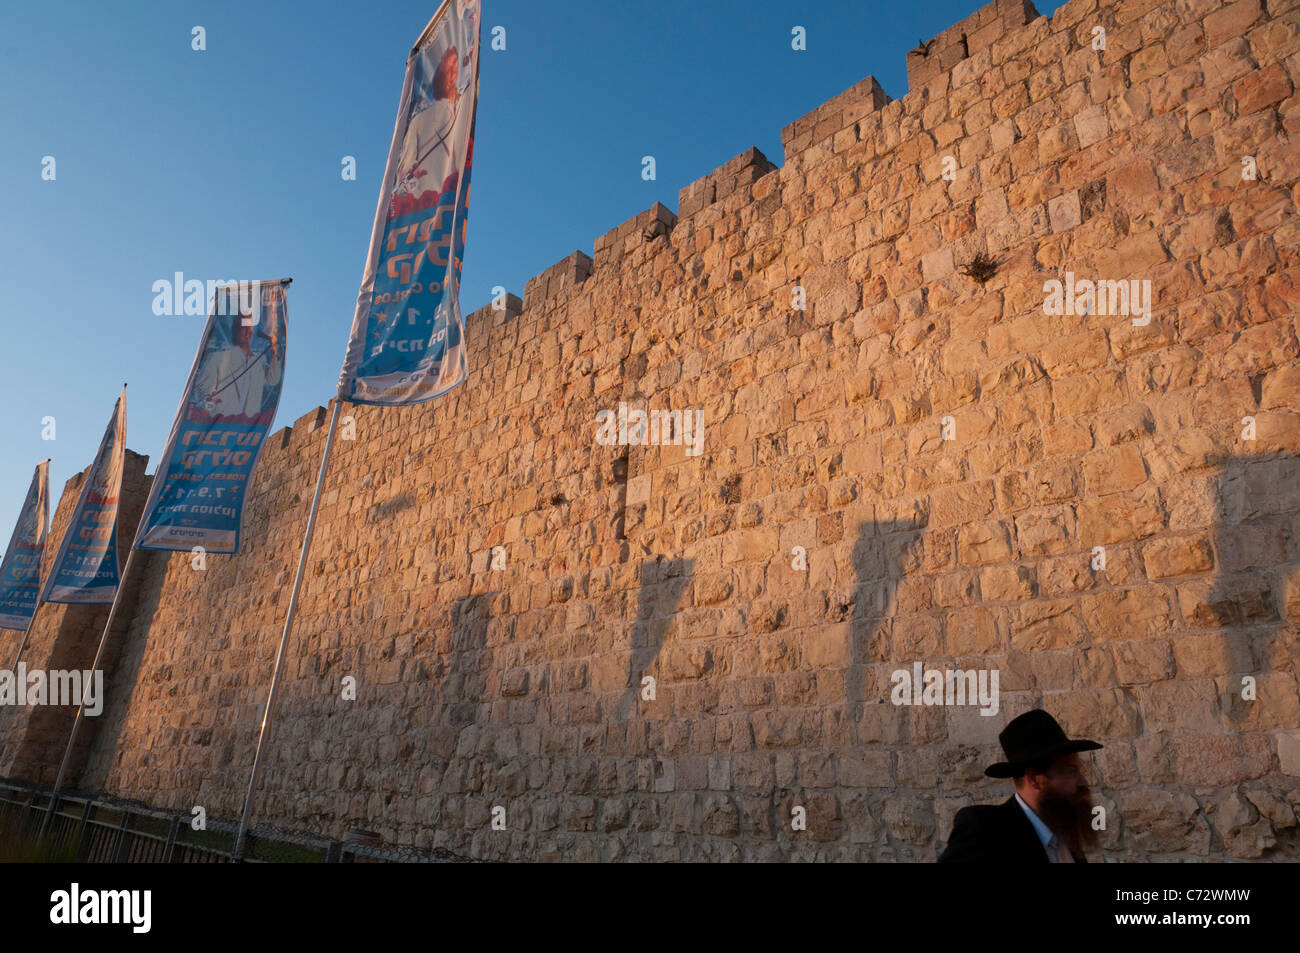 Les murs de la ville au coucher du soleil avec des drapeaux et juif orthodoxe. La porte de Jaffa. Vieille ville de Jérusalem Israël. Banque D'Images